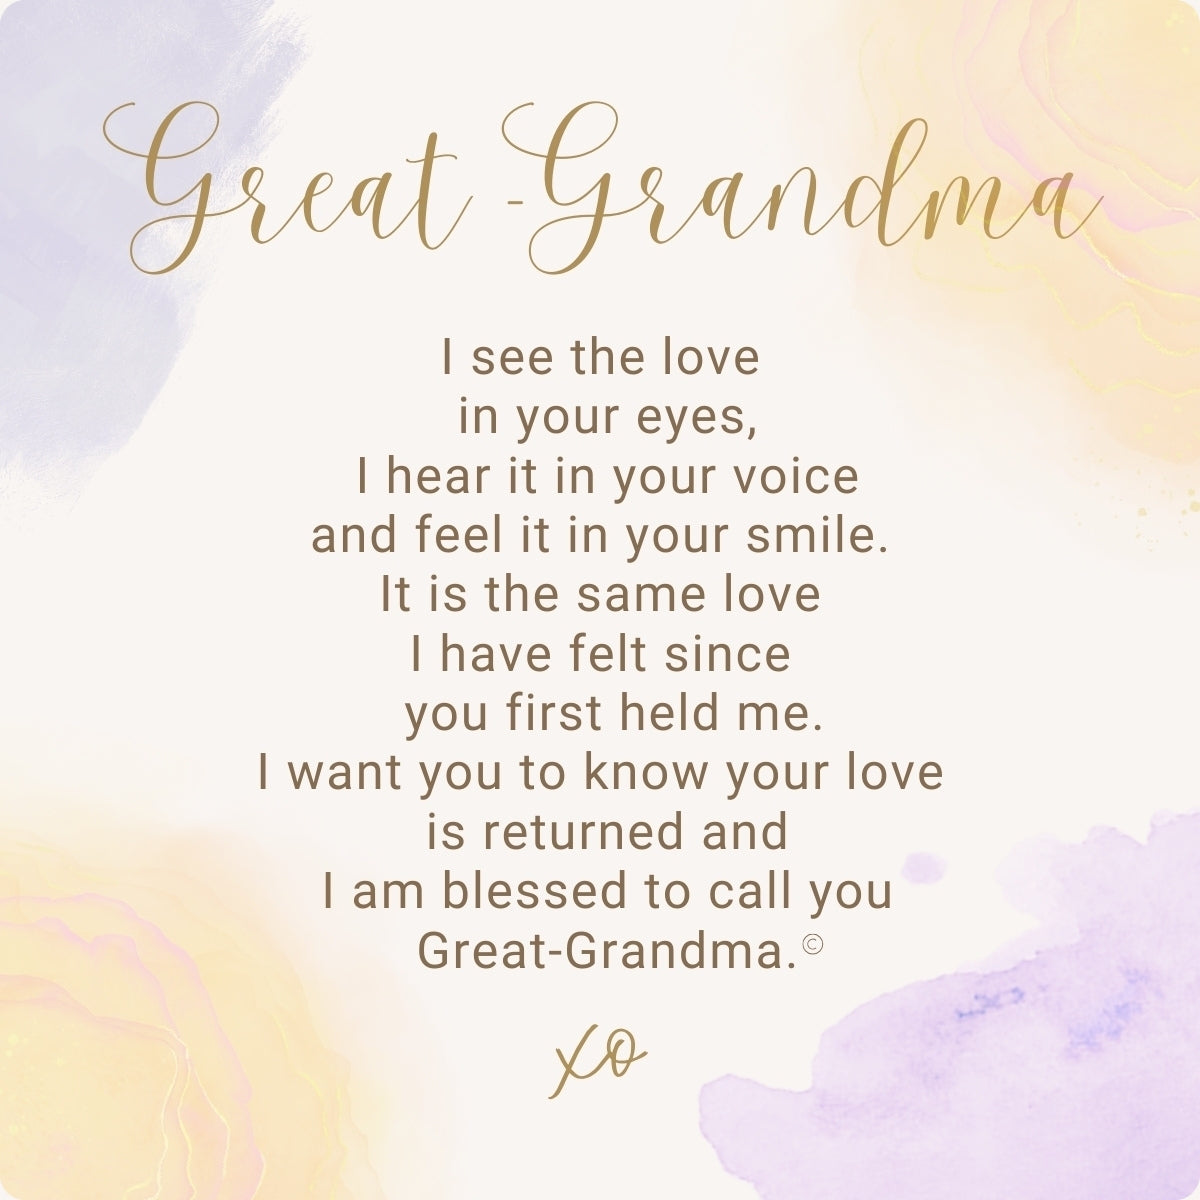 Her Heart for Great-Grandma sentiment.